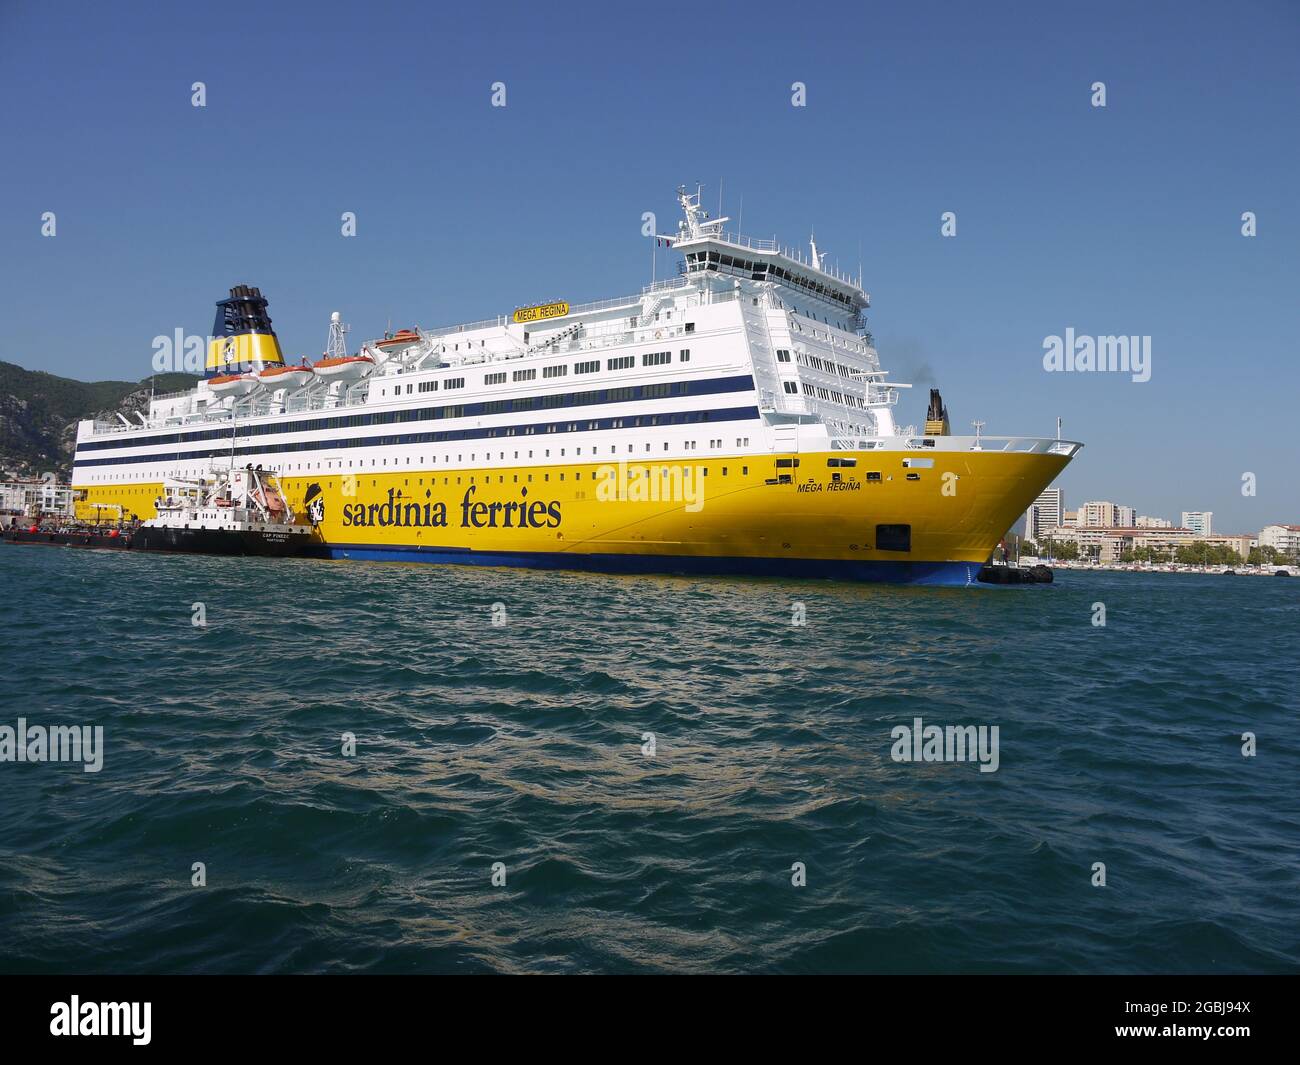 Un grand navire de transport de passagers desservant la Corse dans le port de Toulon, en France Banque D'Images